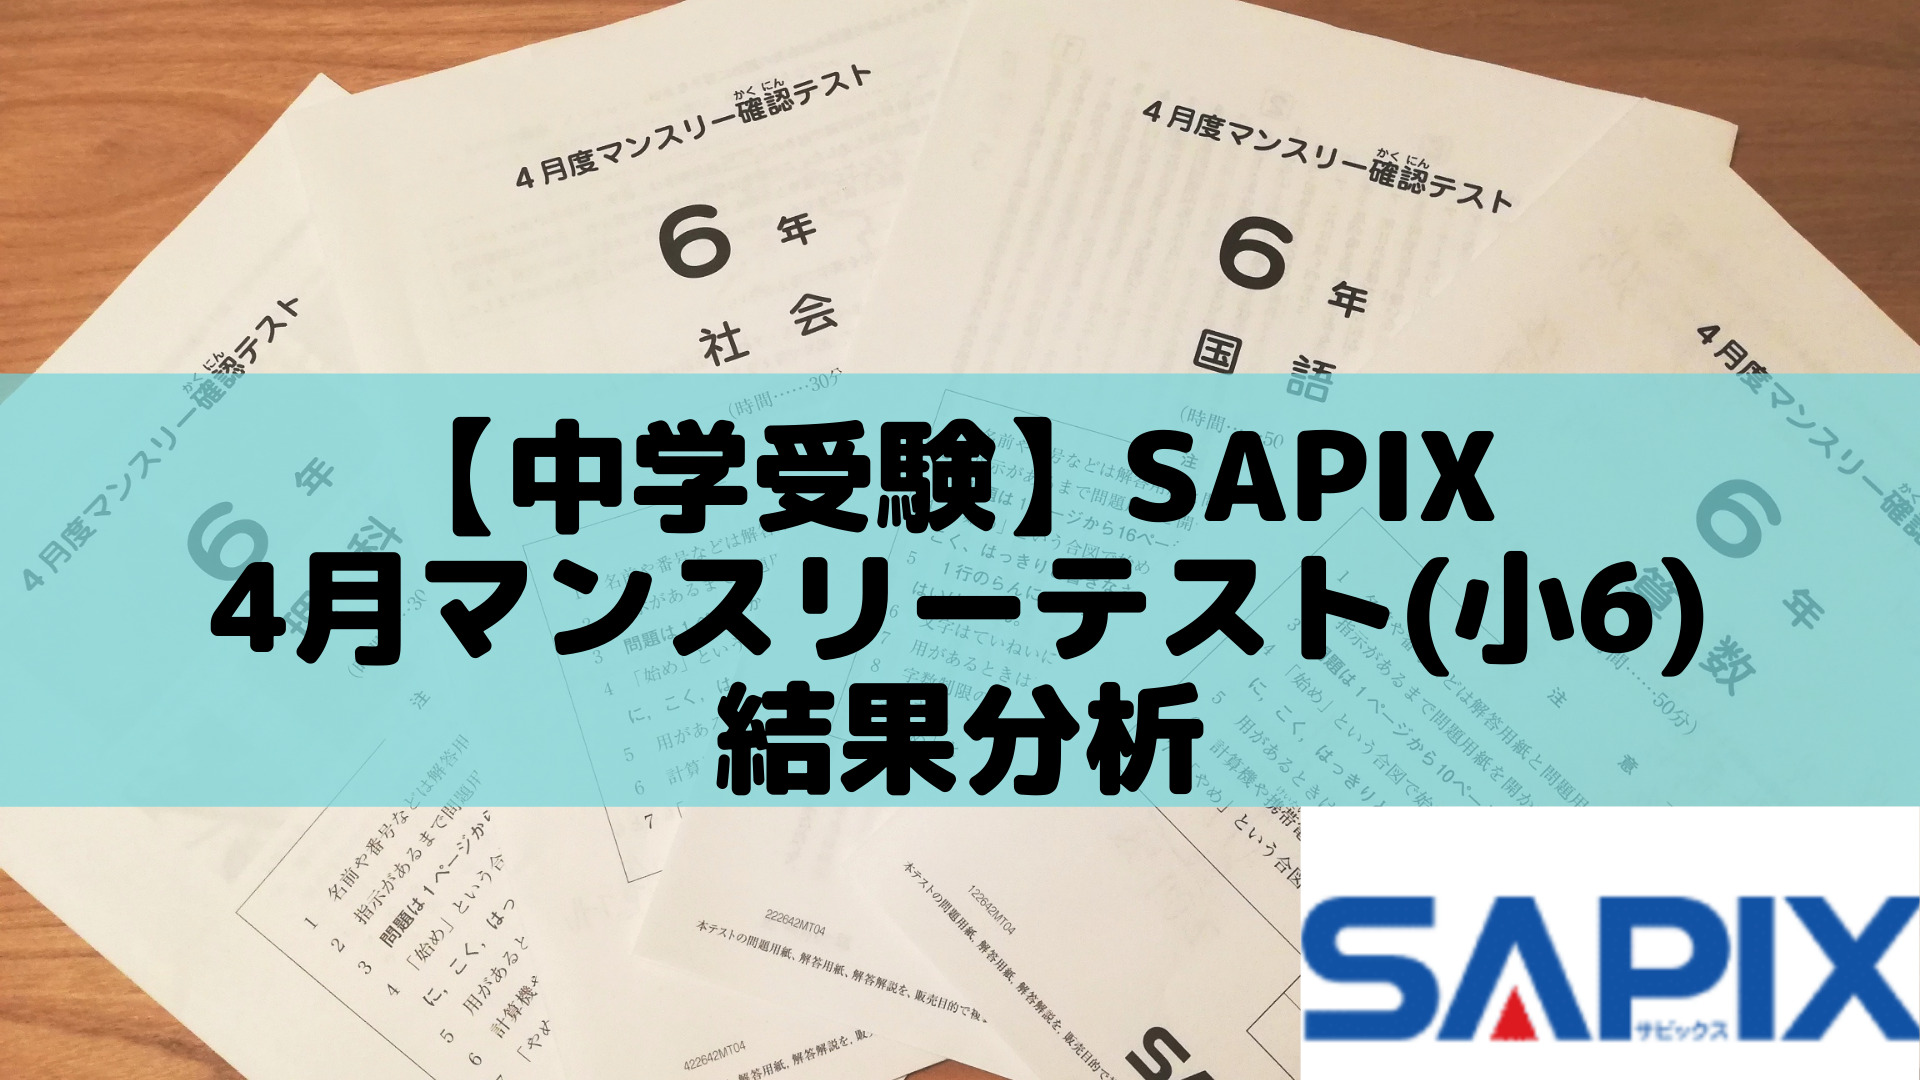 サピックス SAPIX 6年 テストフルセット 2021年度 最新版 | nate 